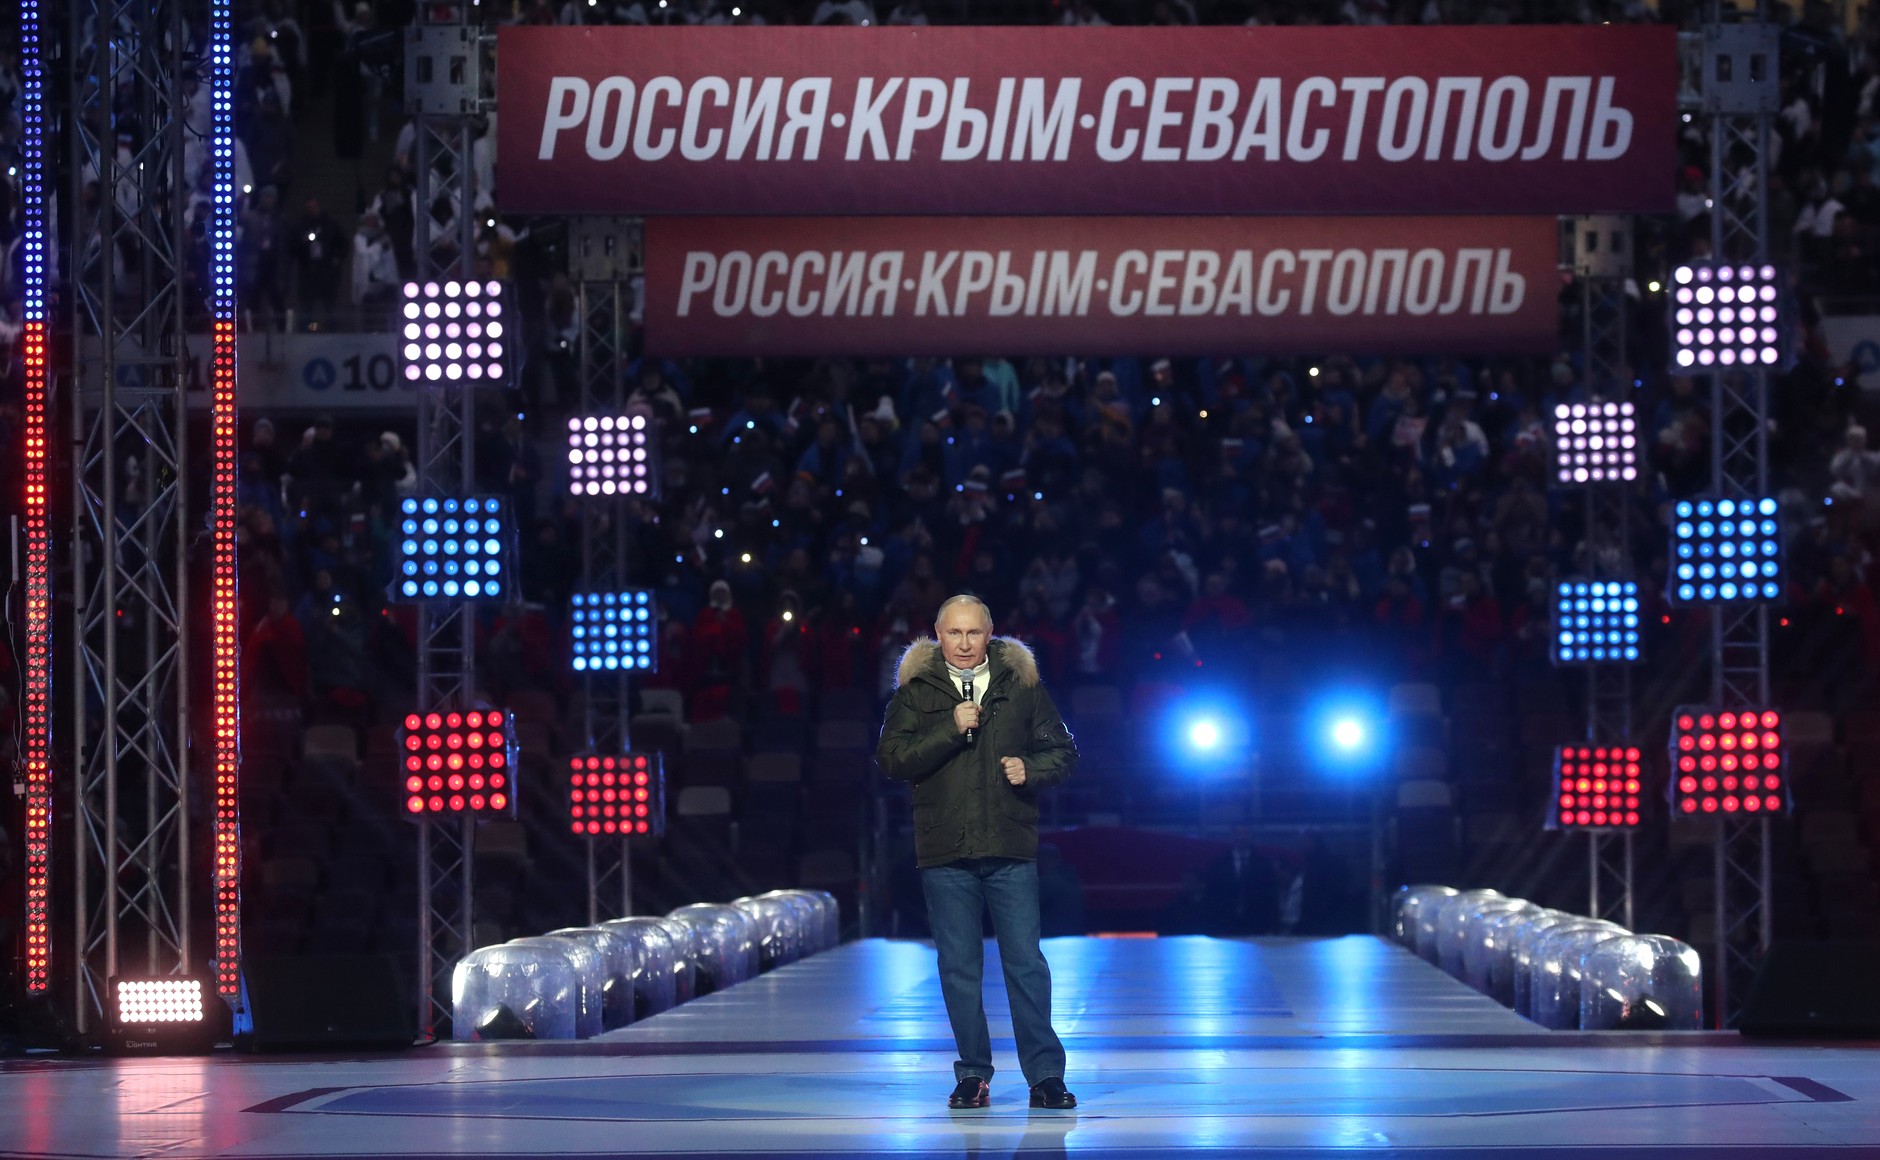 Концерт посвященный присоединению крыма к россии